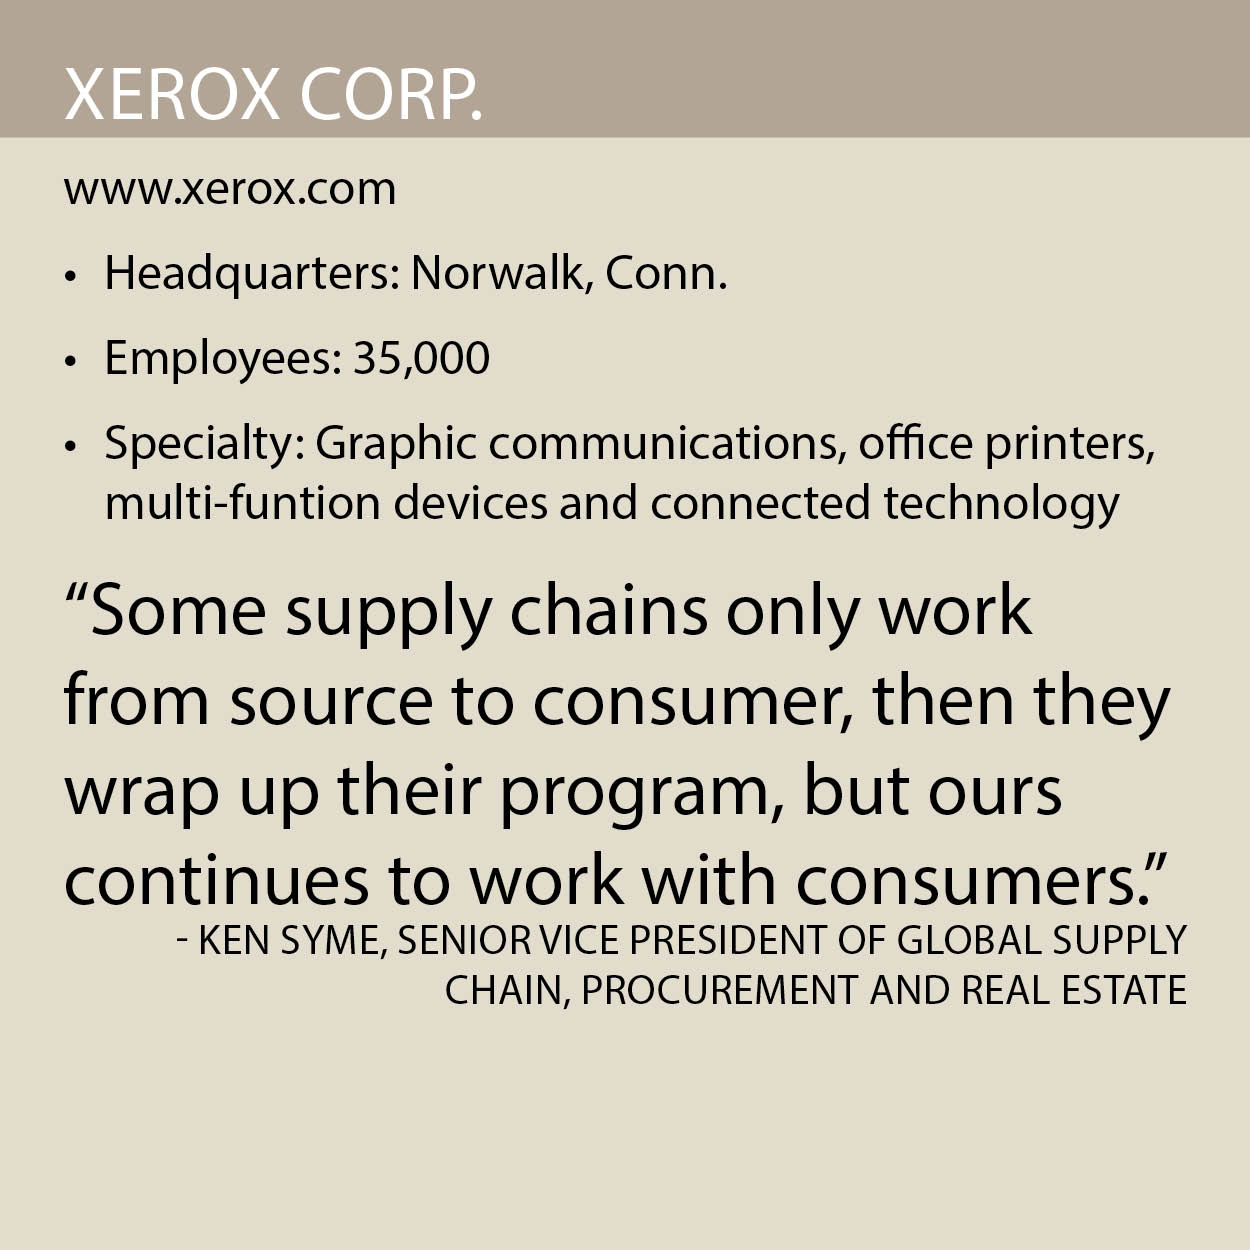 Xerox Corp fact box